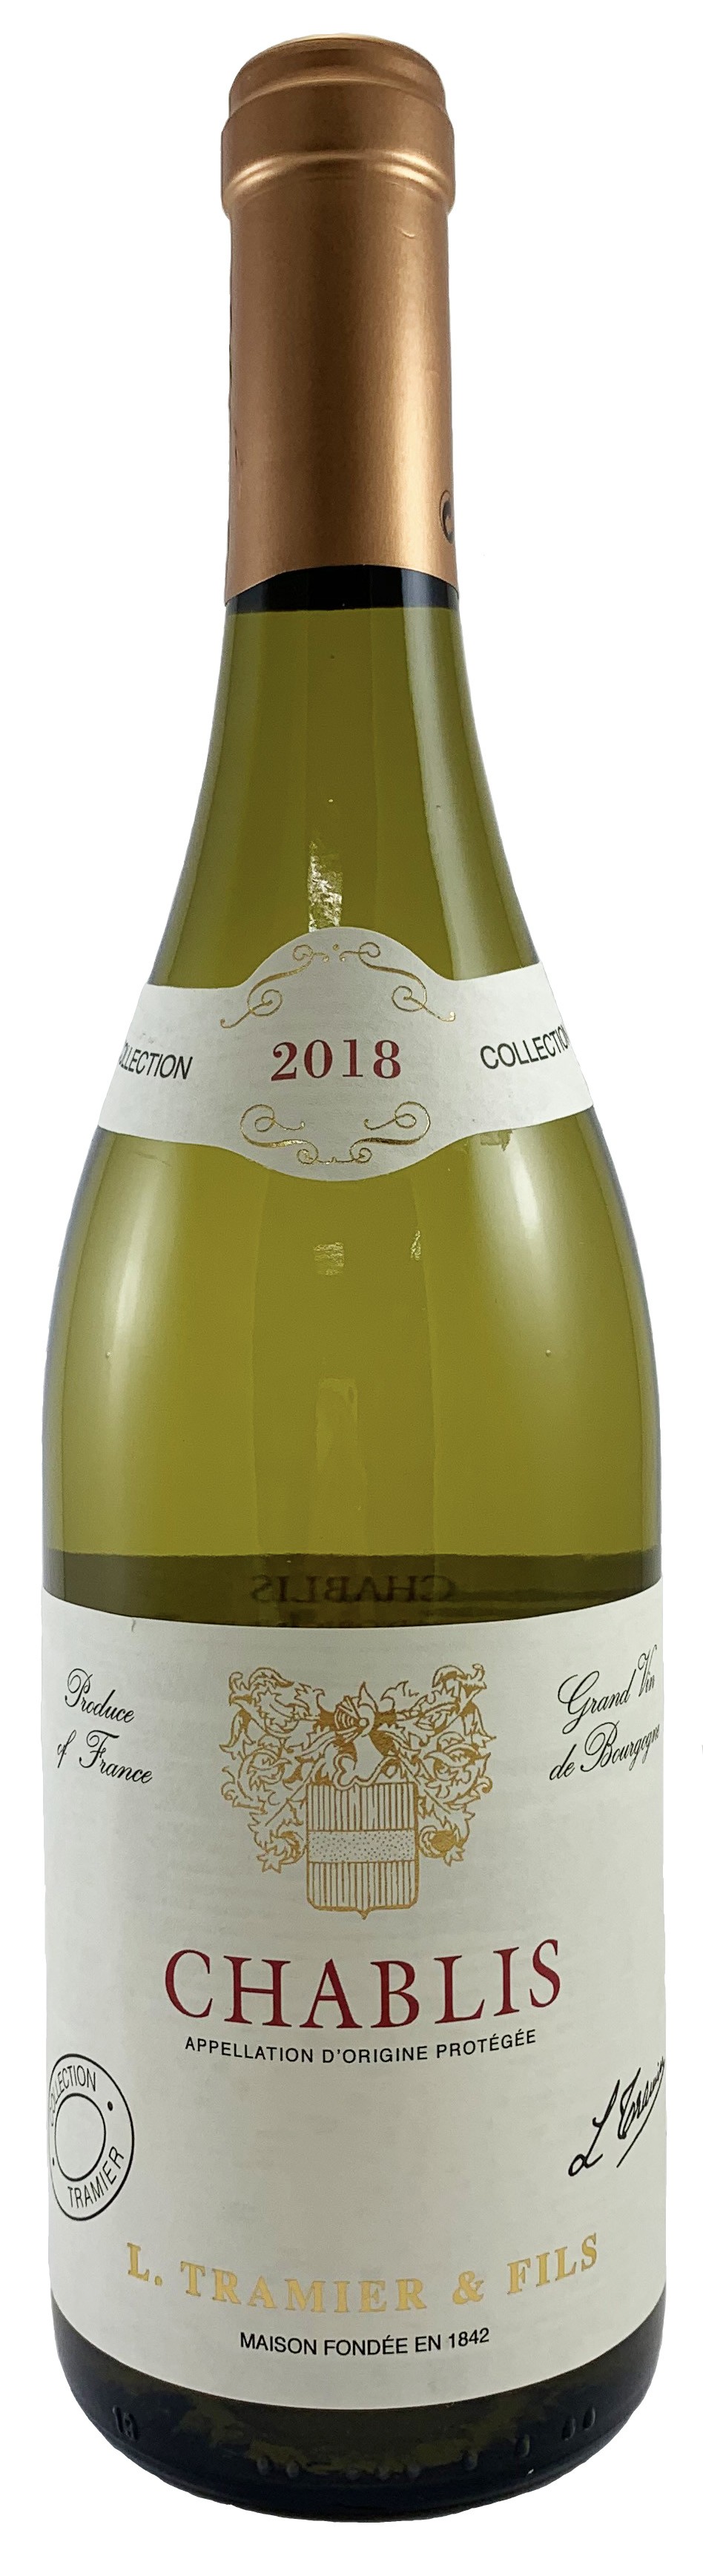 法國 鉈尼酒莊 夏布利AOP 白葡萄酒2018